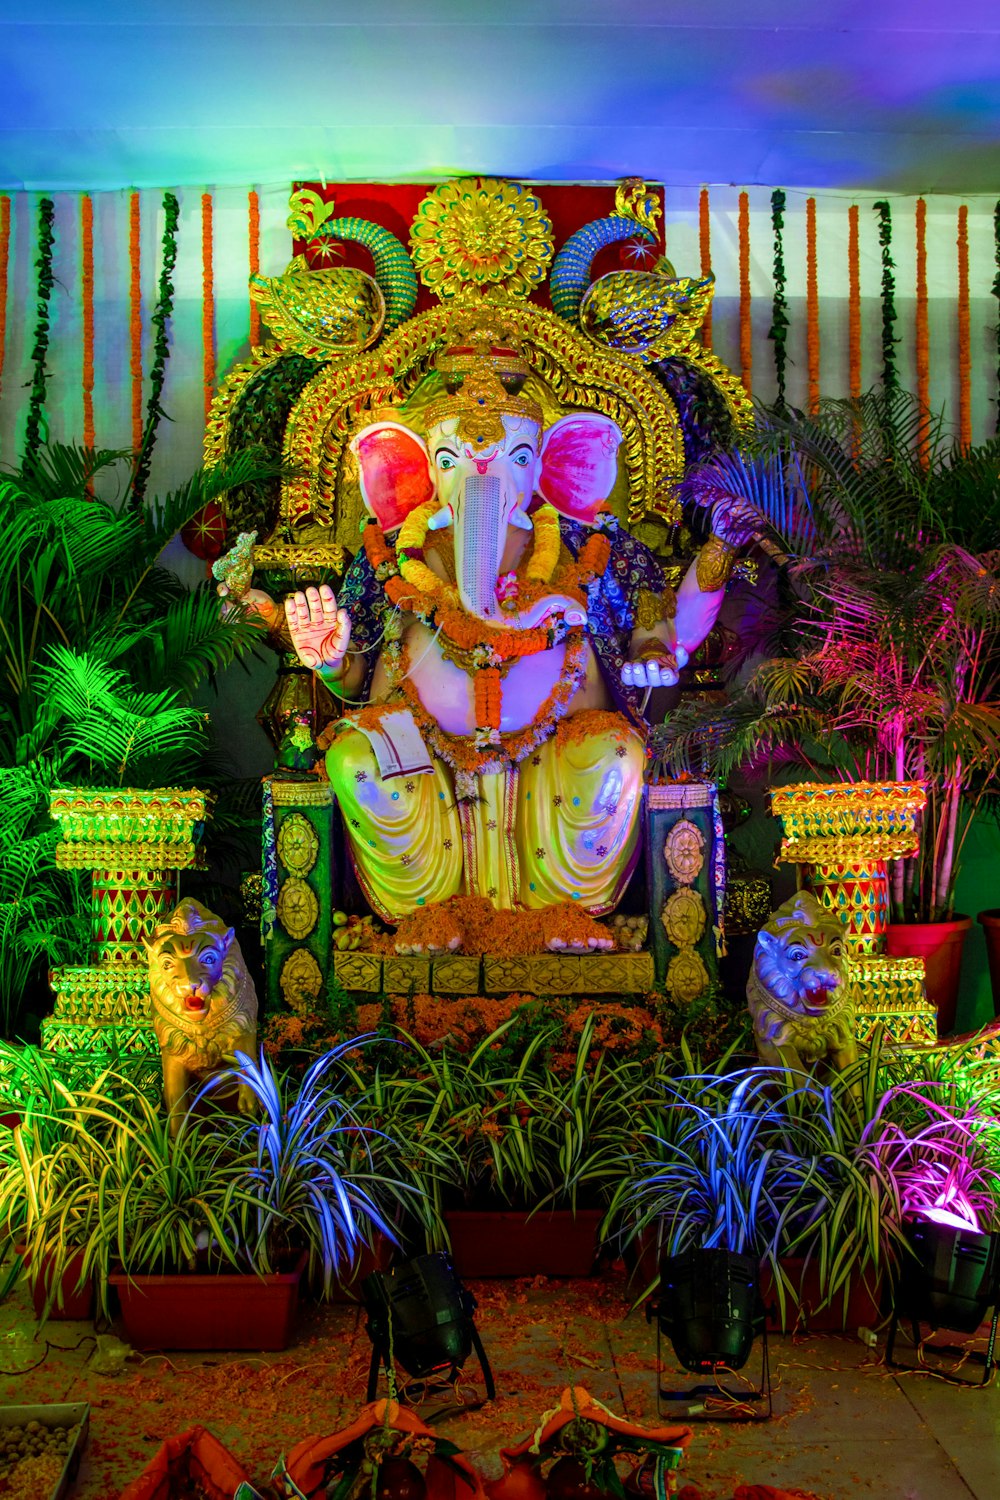 Statua della divinità indù circondata da piante verdi